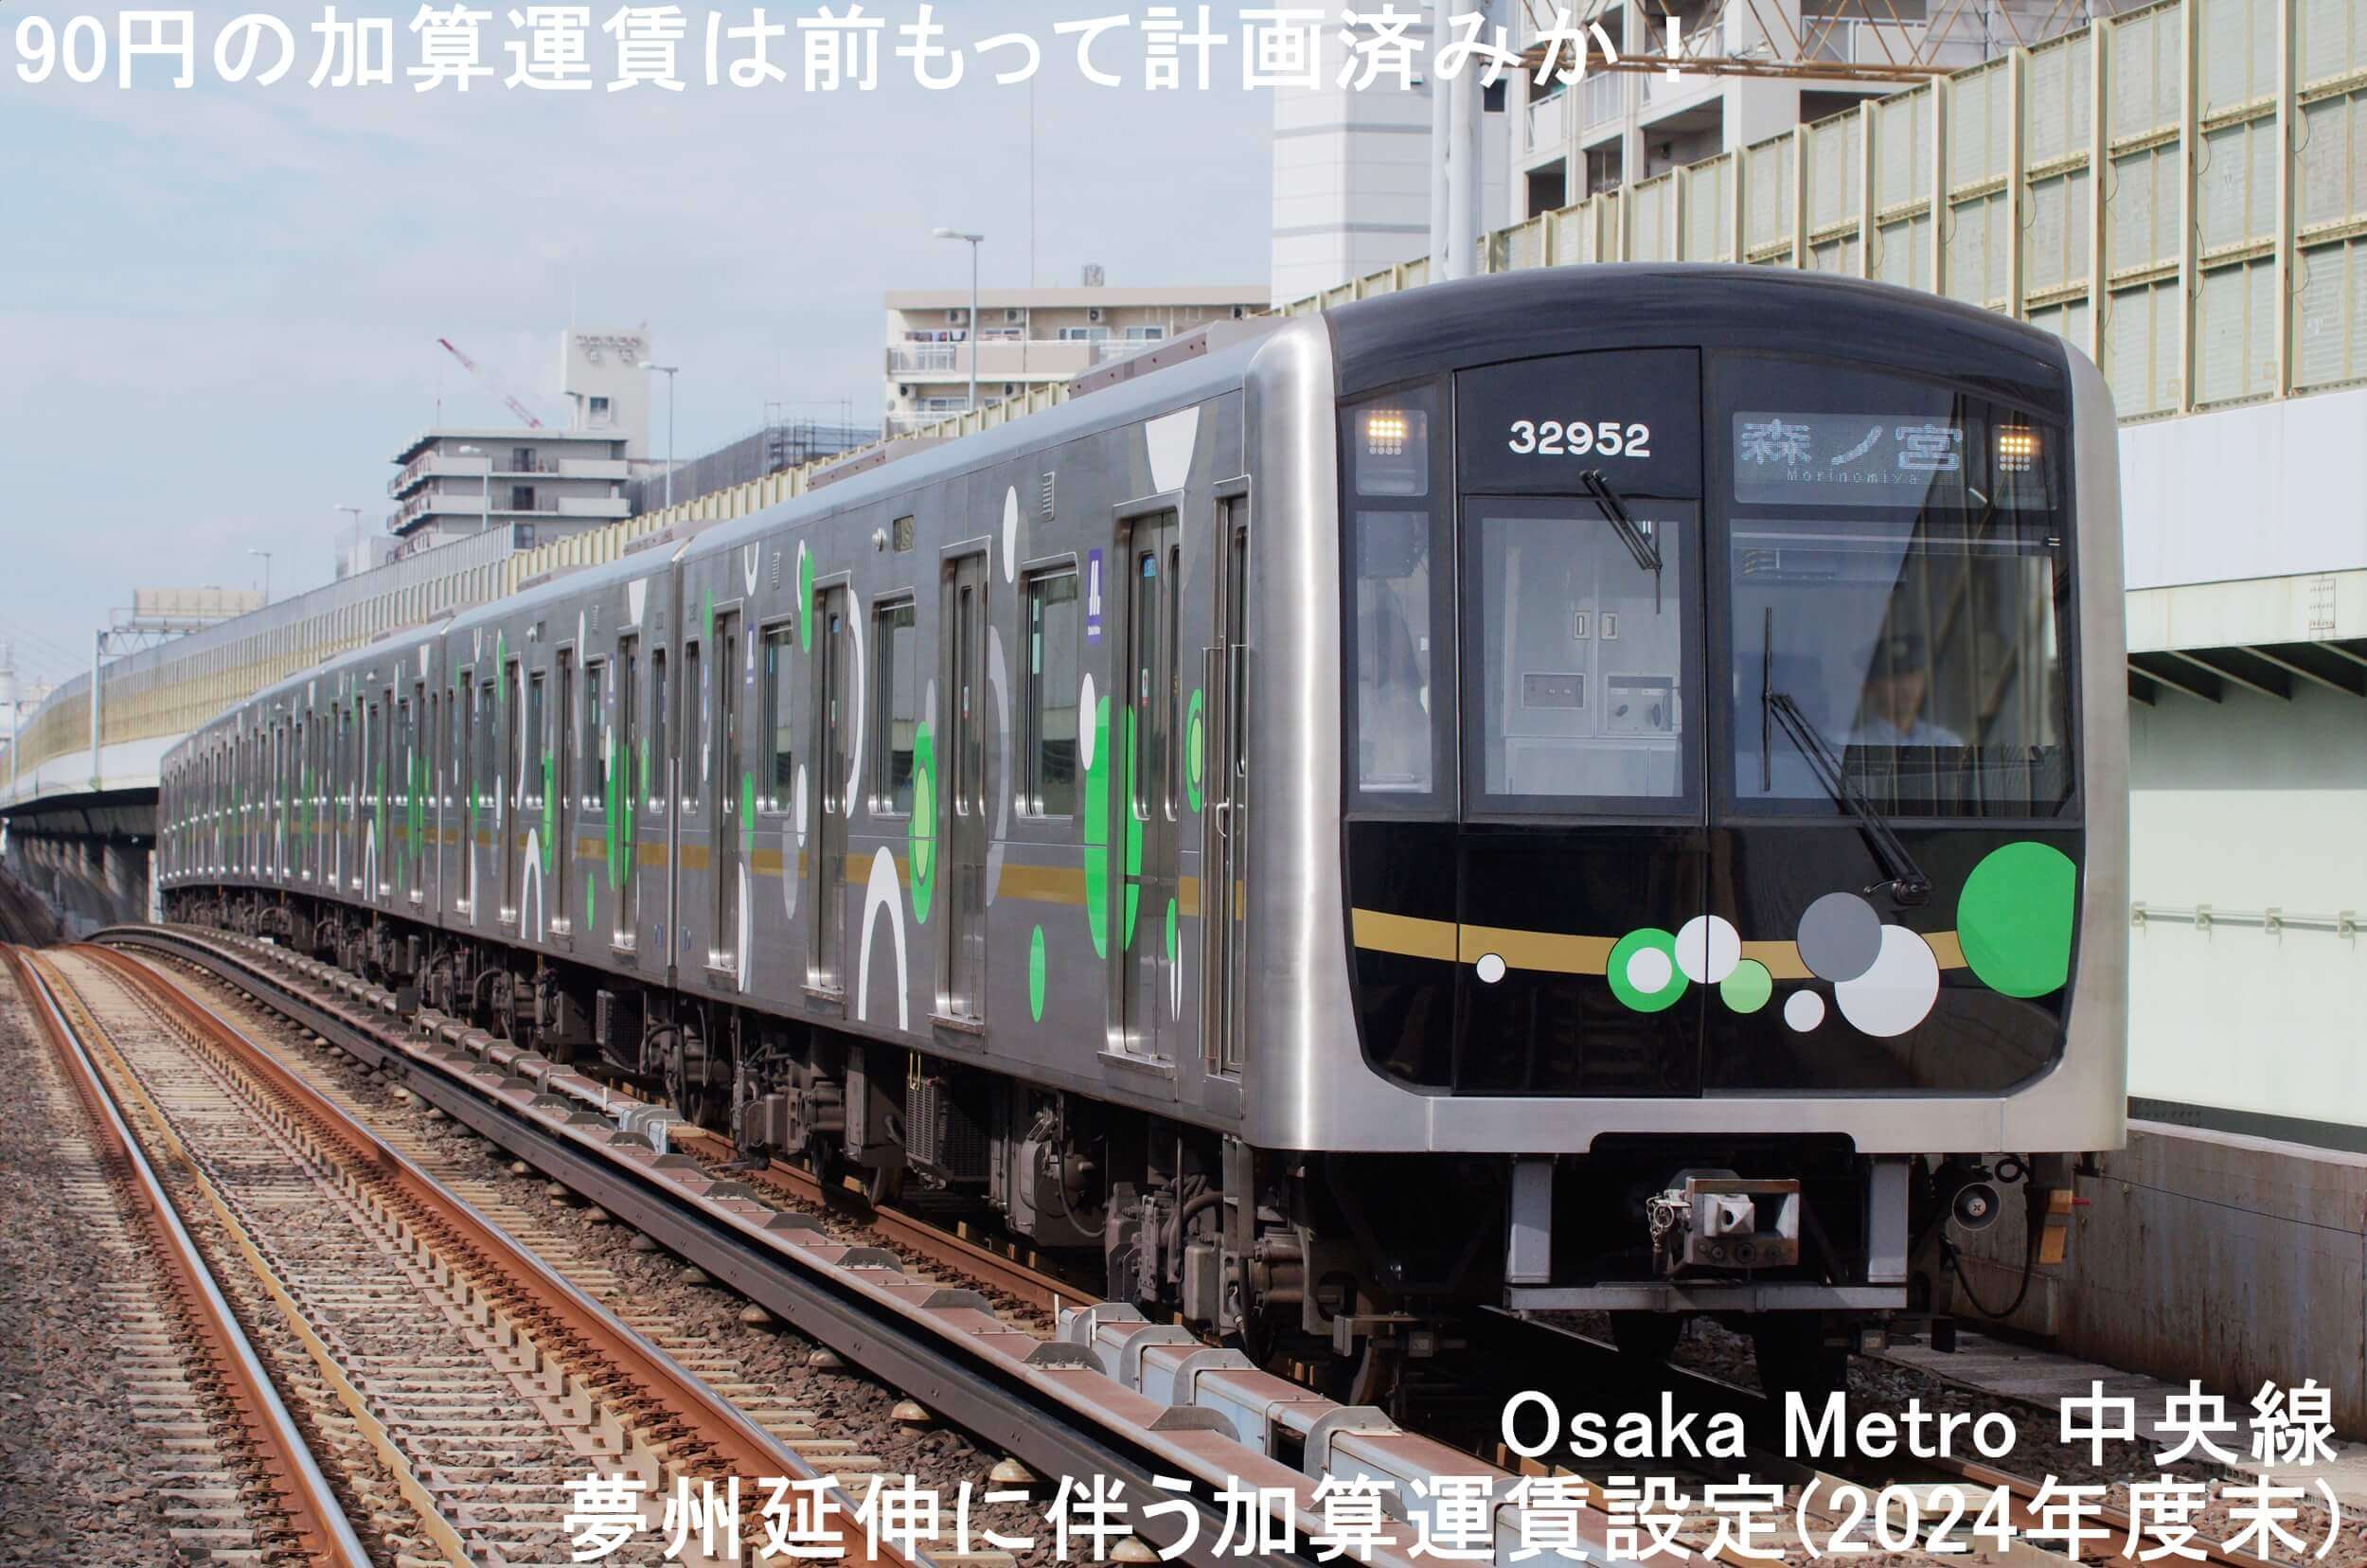 90円の加算運賃は前もって計画済みか！　Osaka Metro 中央線夢州延伸に伴う加算運賃設定(2024年度末)